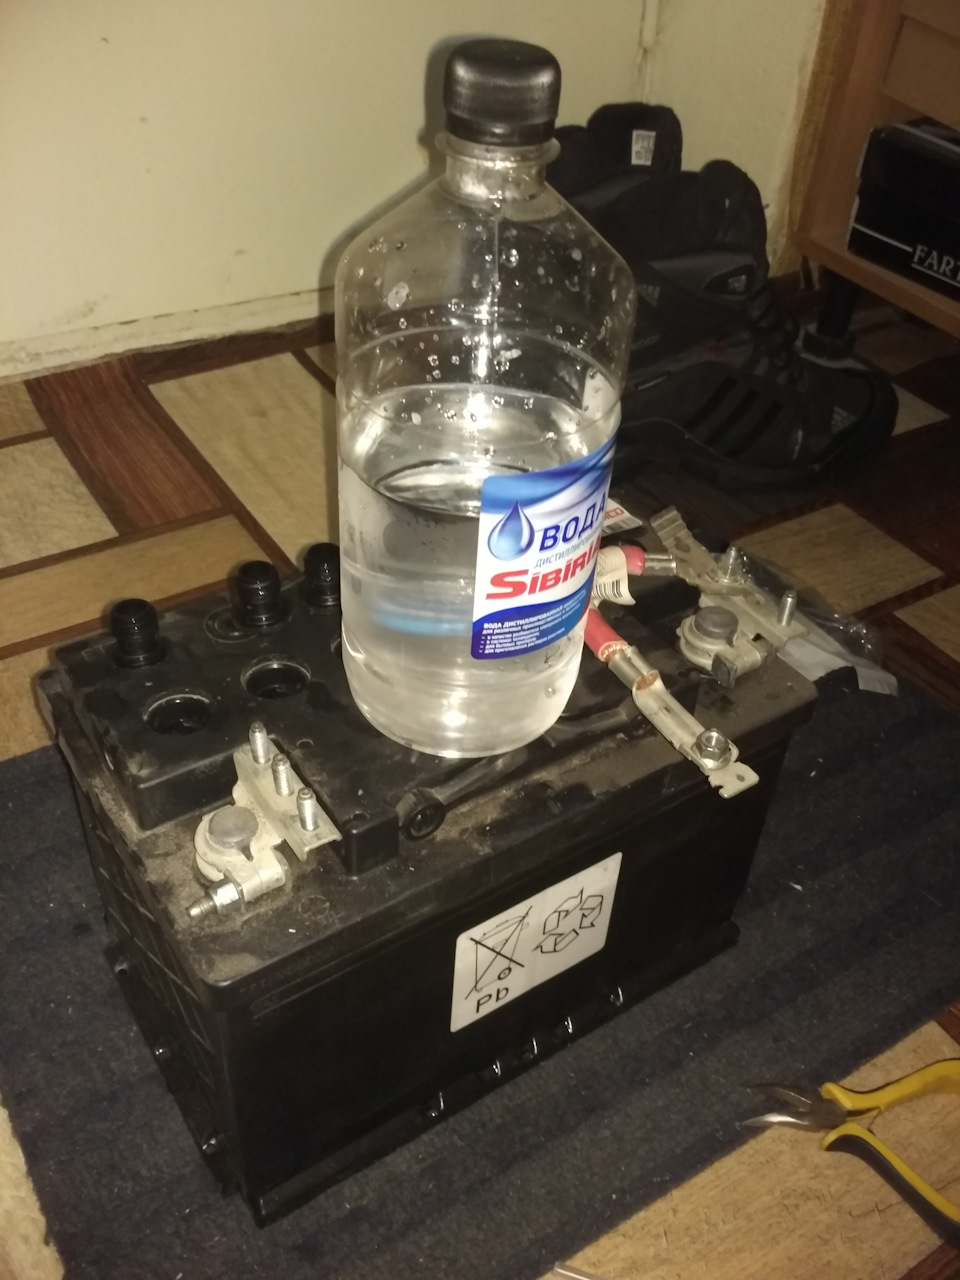 Как правильно долить дистиллированную воду в аккумулятор: пропорции, до какого уровня нужно добавлять жидкость